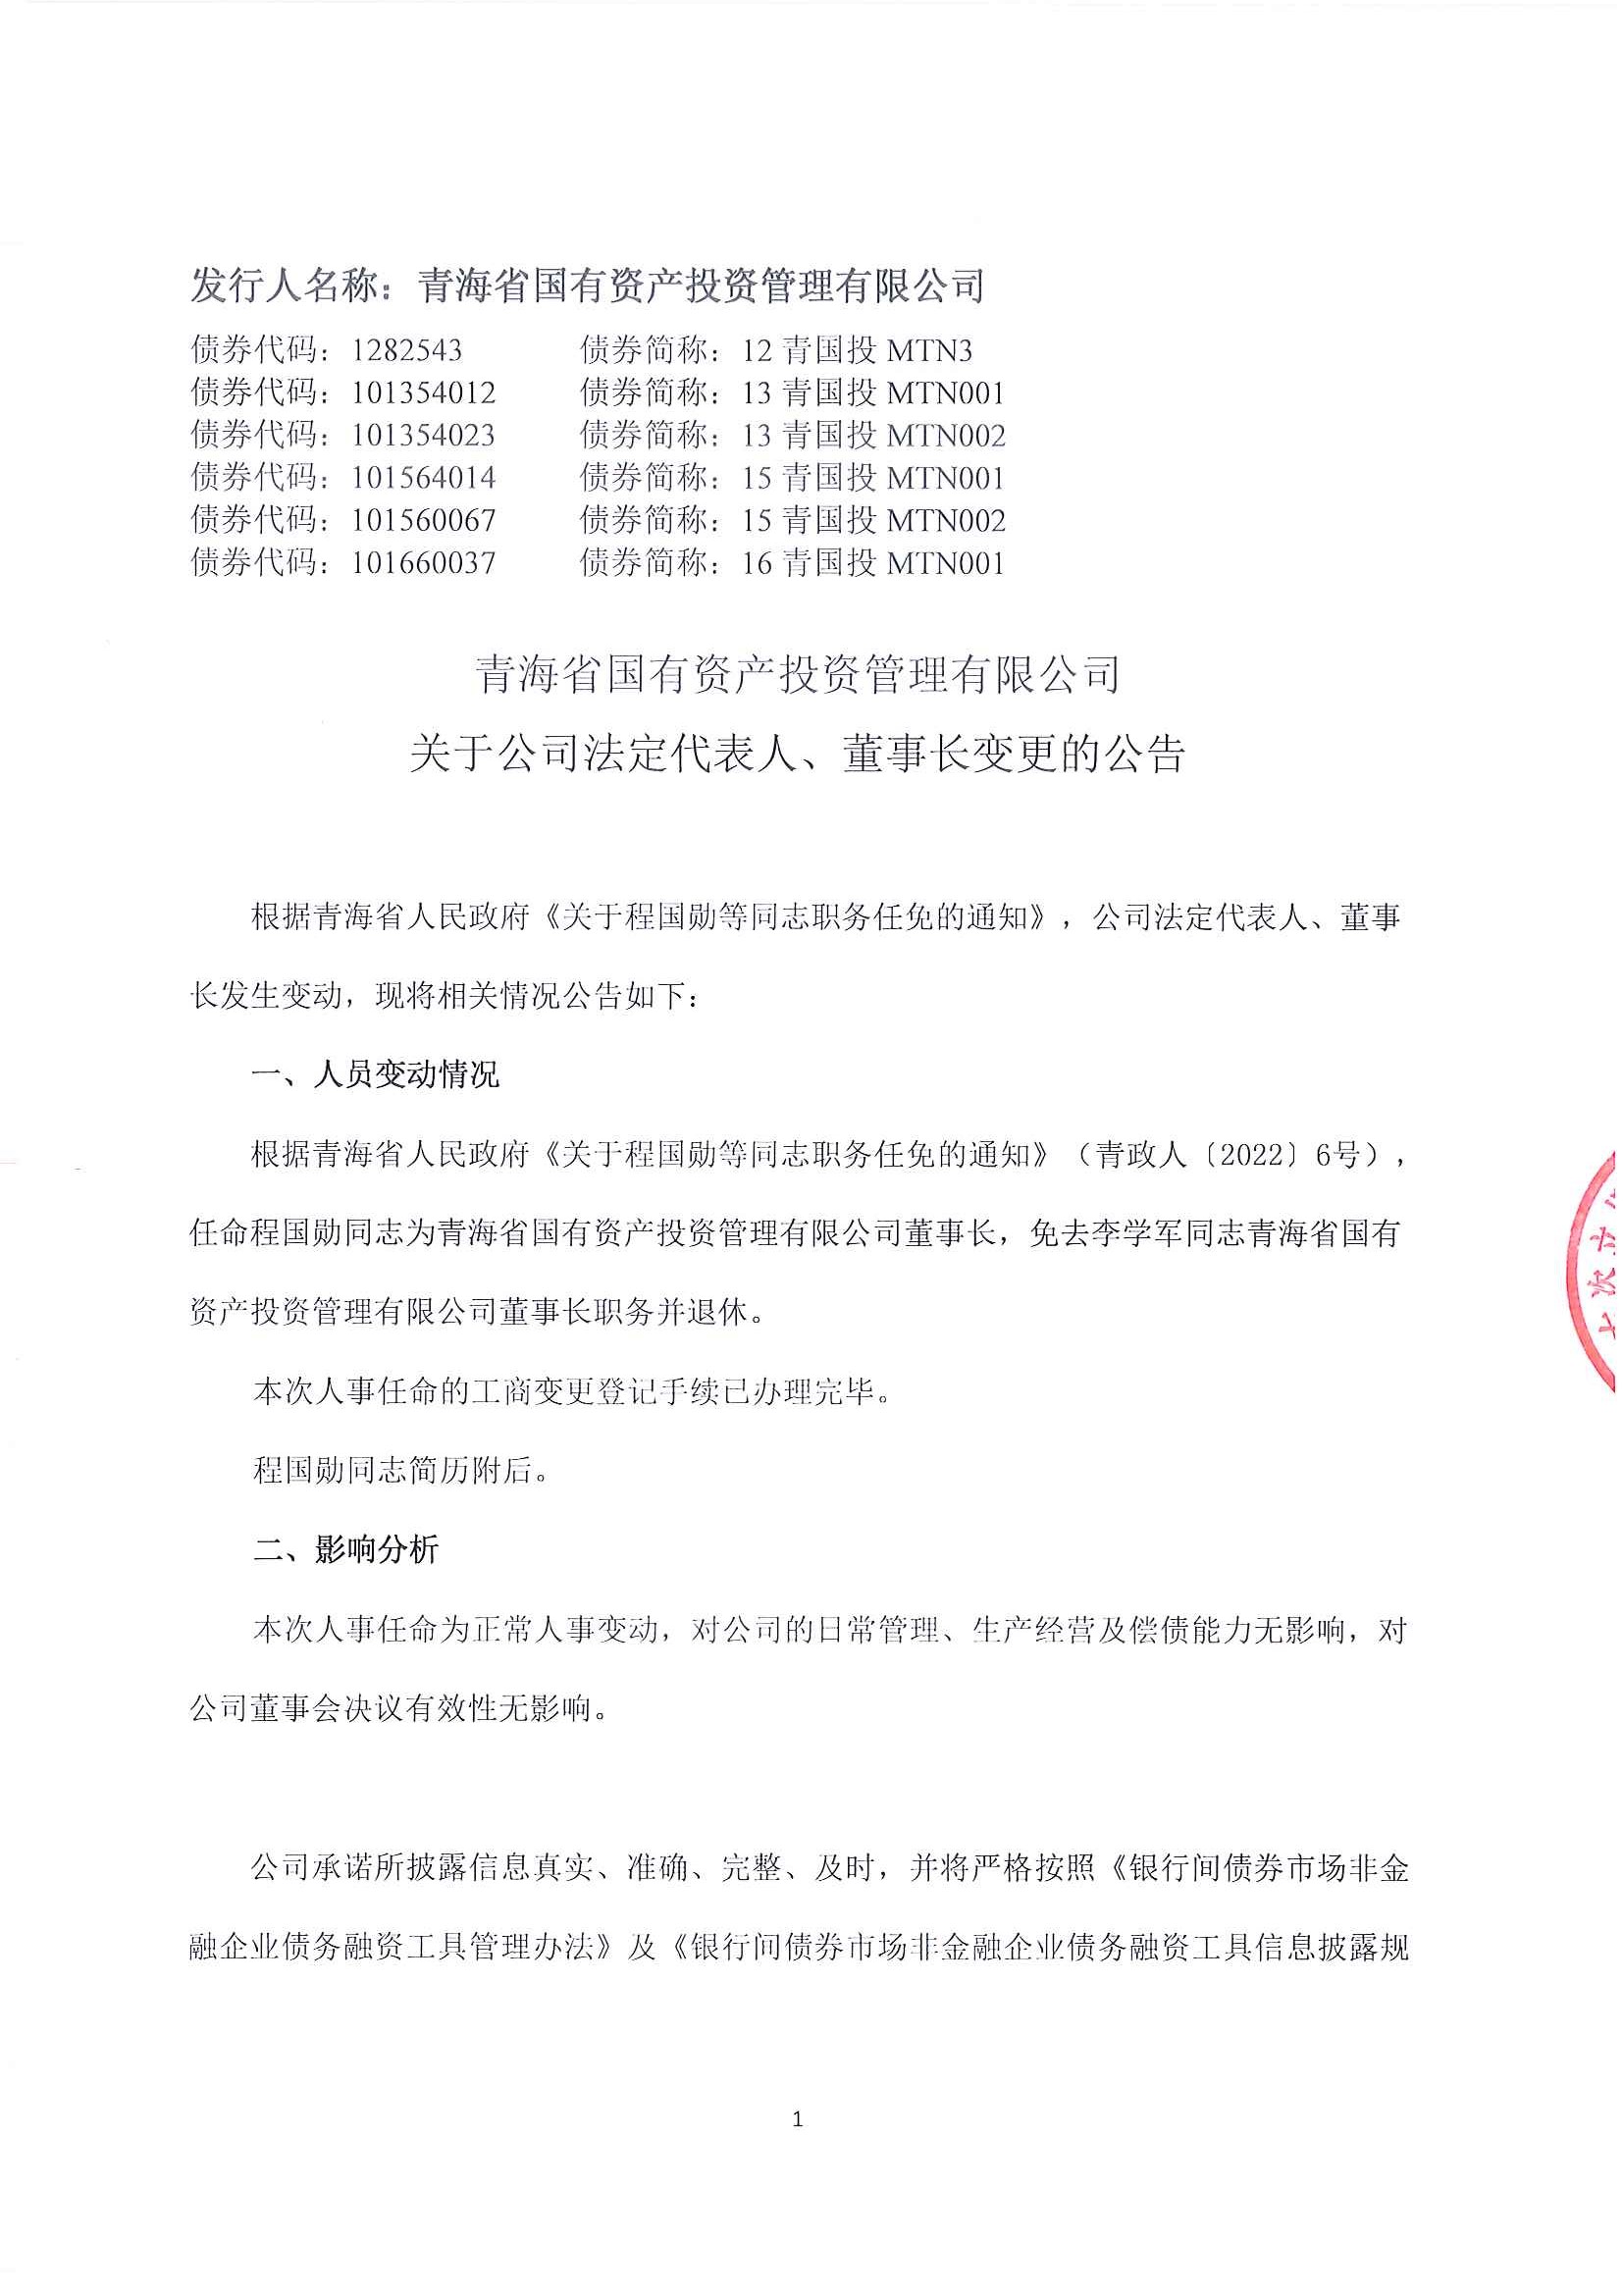 青海省国有资产投资管理有限公司关于公司法定代表人、董事长变更的公告